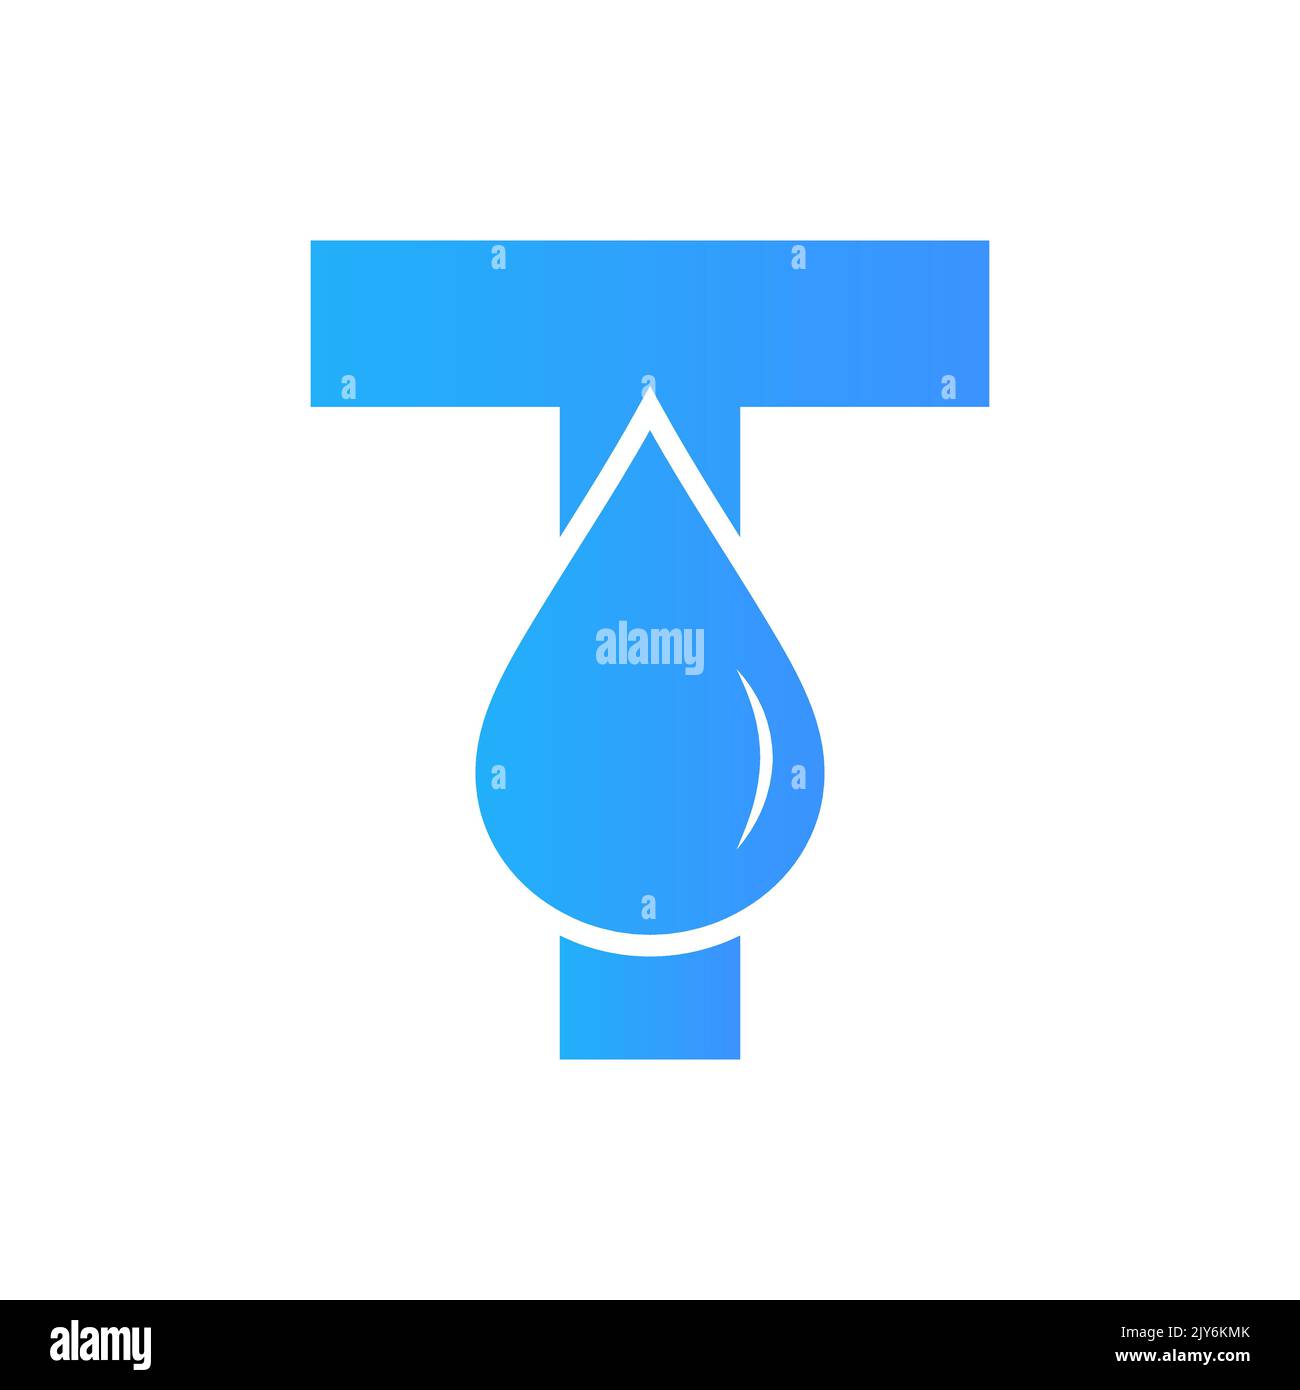 Vektor-Vorlage für Wasserlogo-Element mit T-Zeichen. Wassertropfen-Logo Stock Vektor